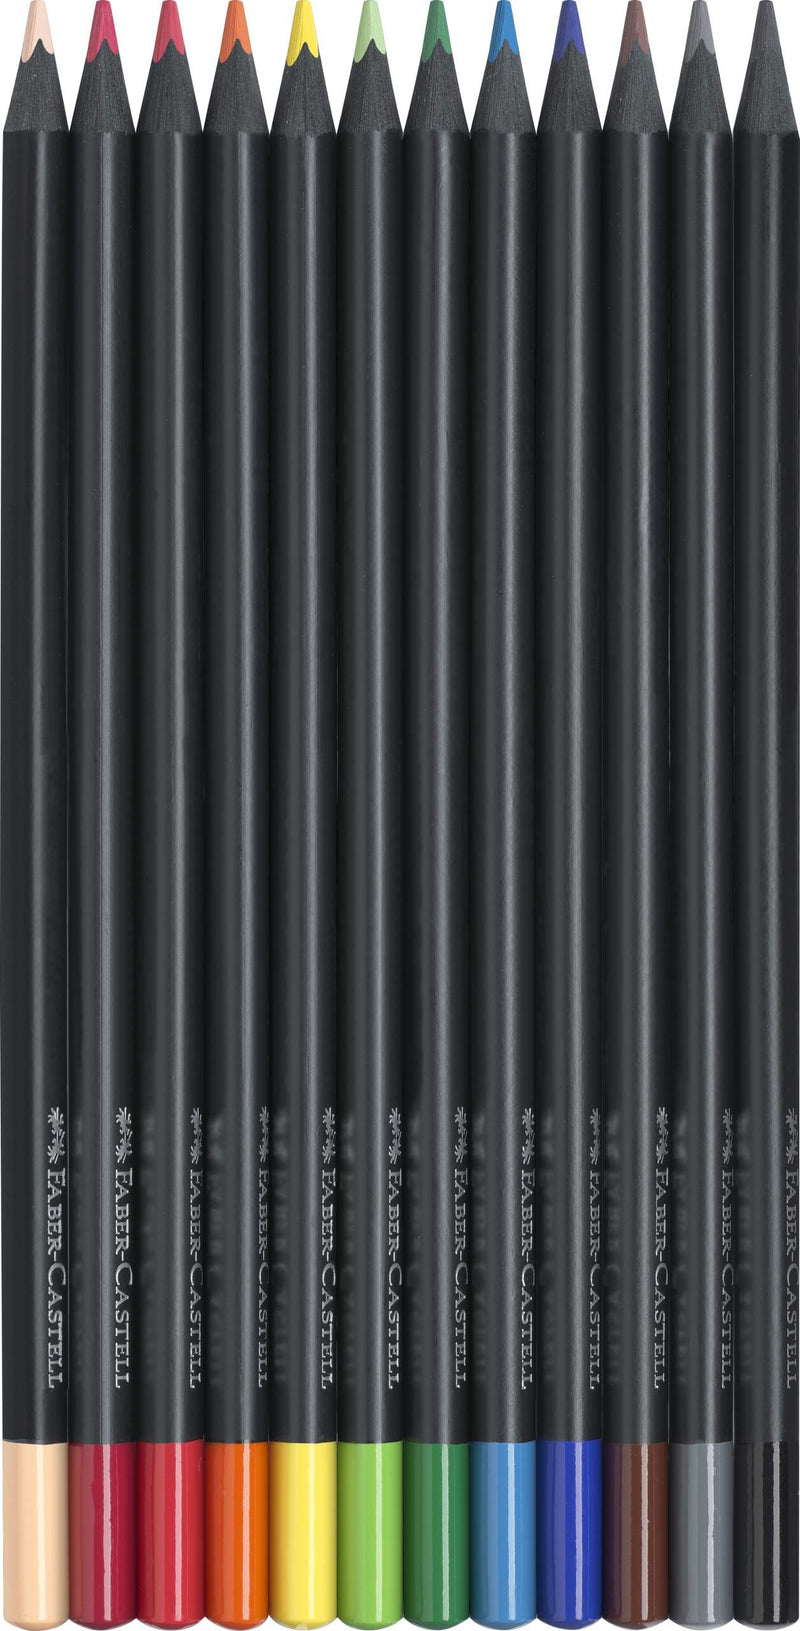 Etui de 12 crayons de couleurs Black Edition